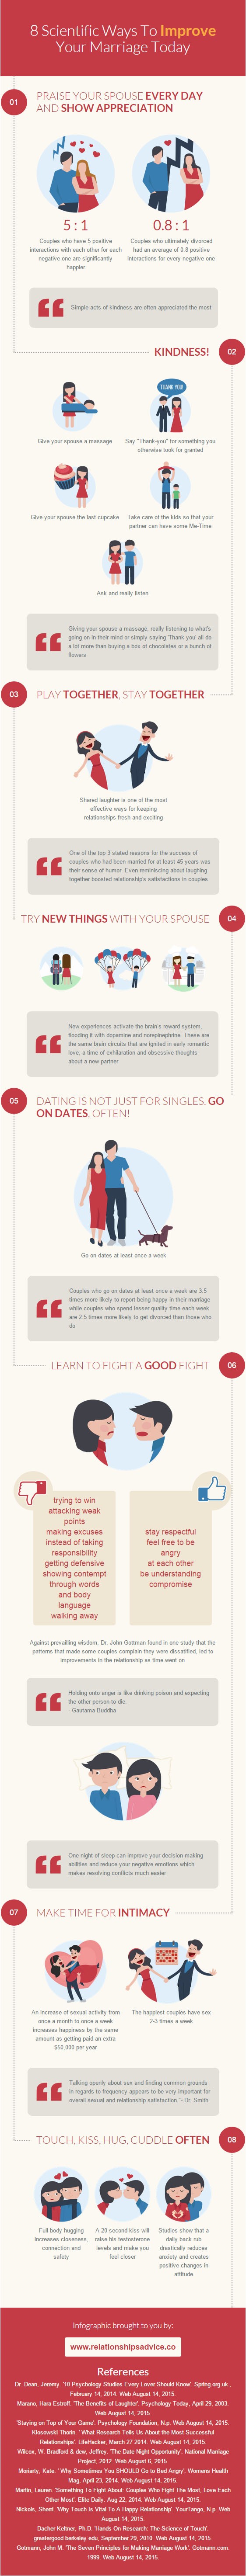 Jaká jsou tajemství šťastného manželství? (Infographic: relationsadvice.co)